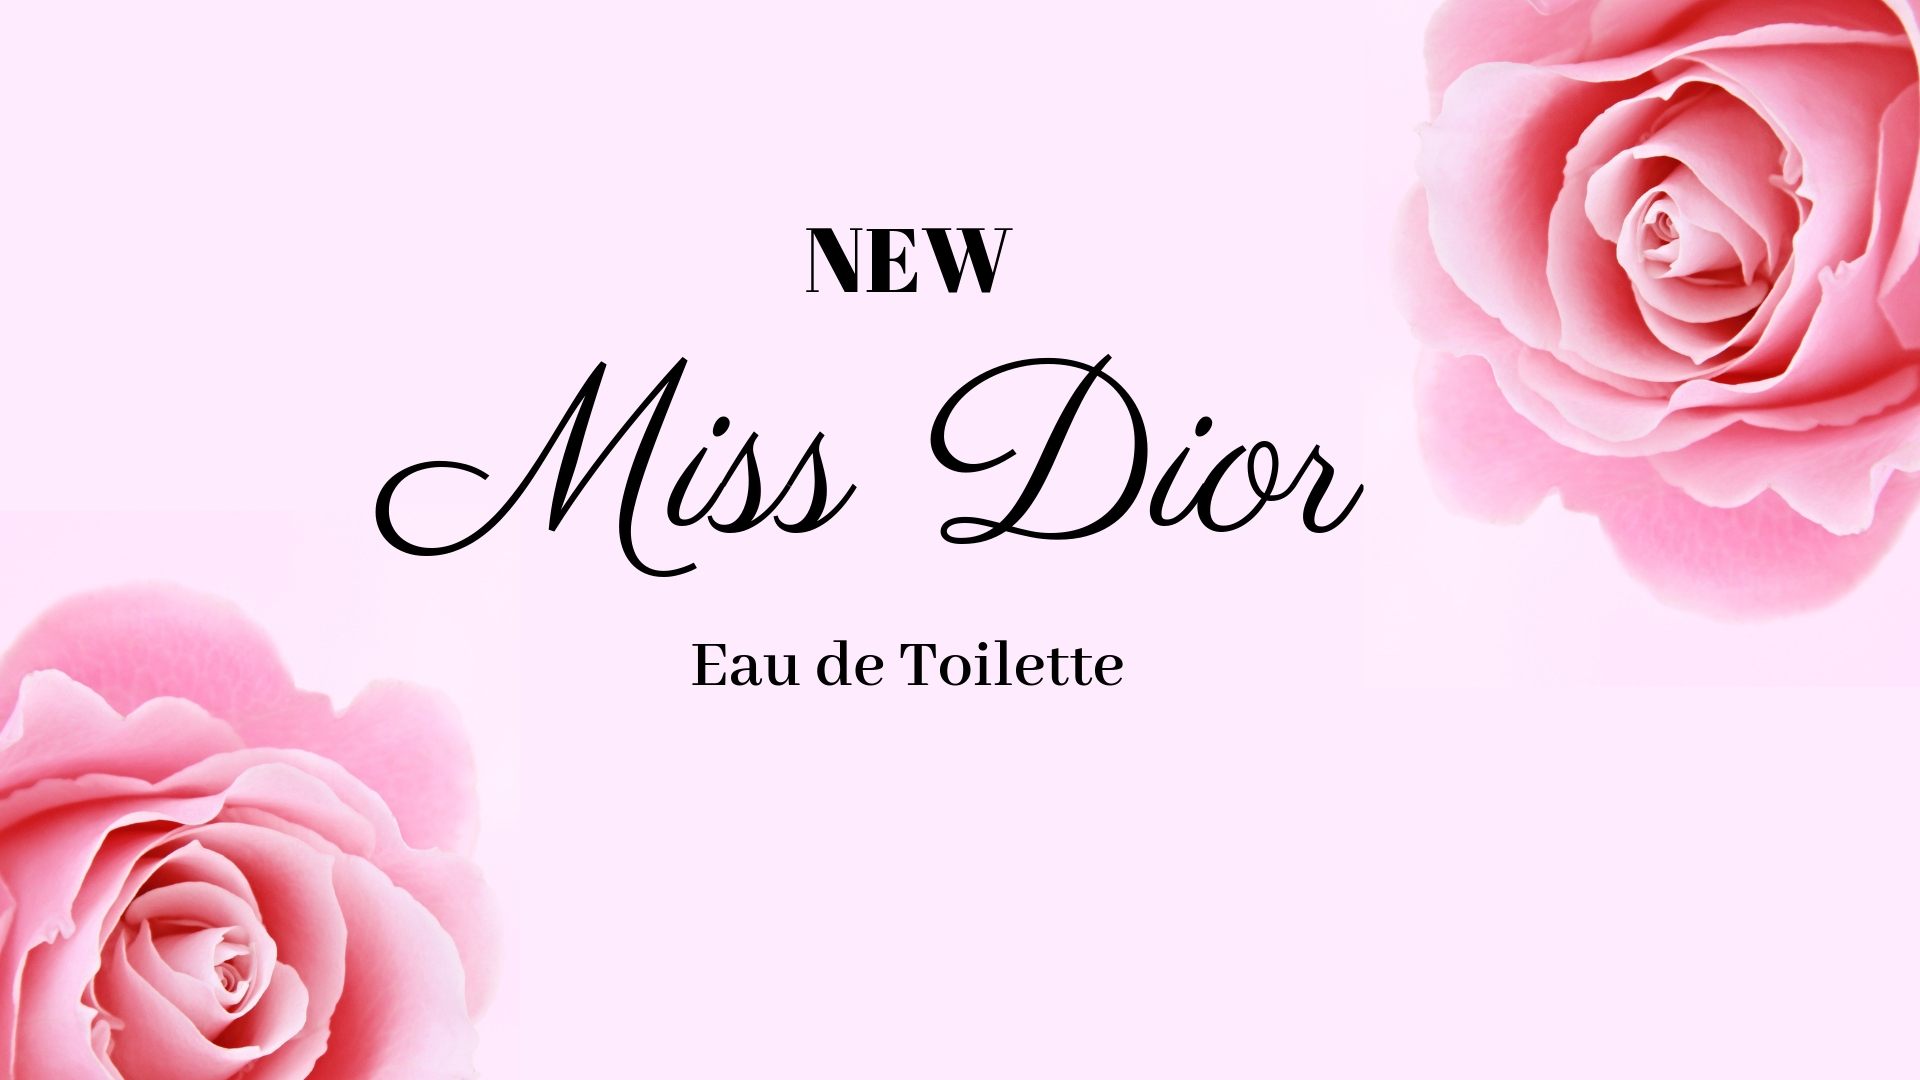 miss dior eau de toilette 2019 review